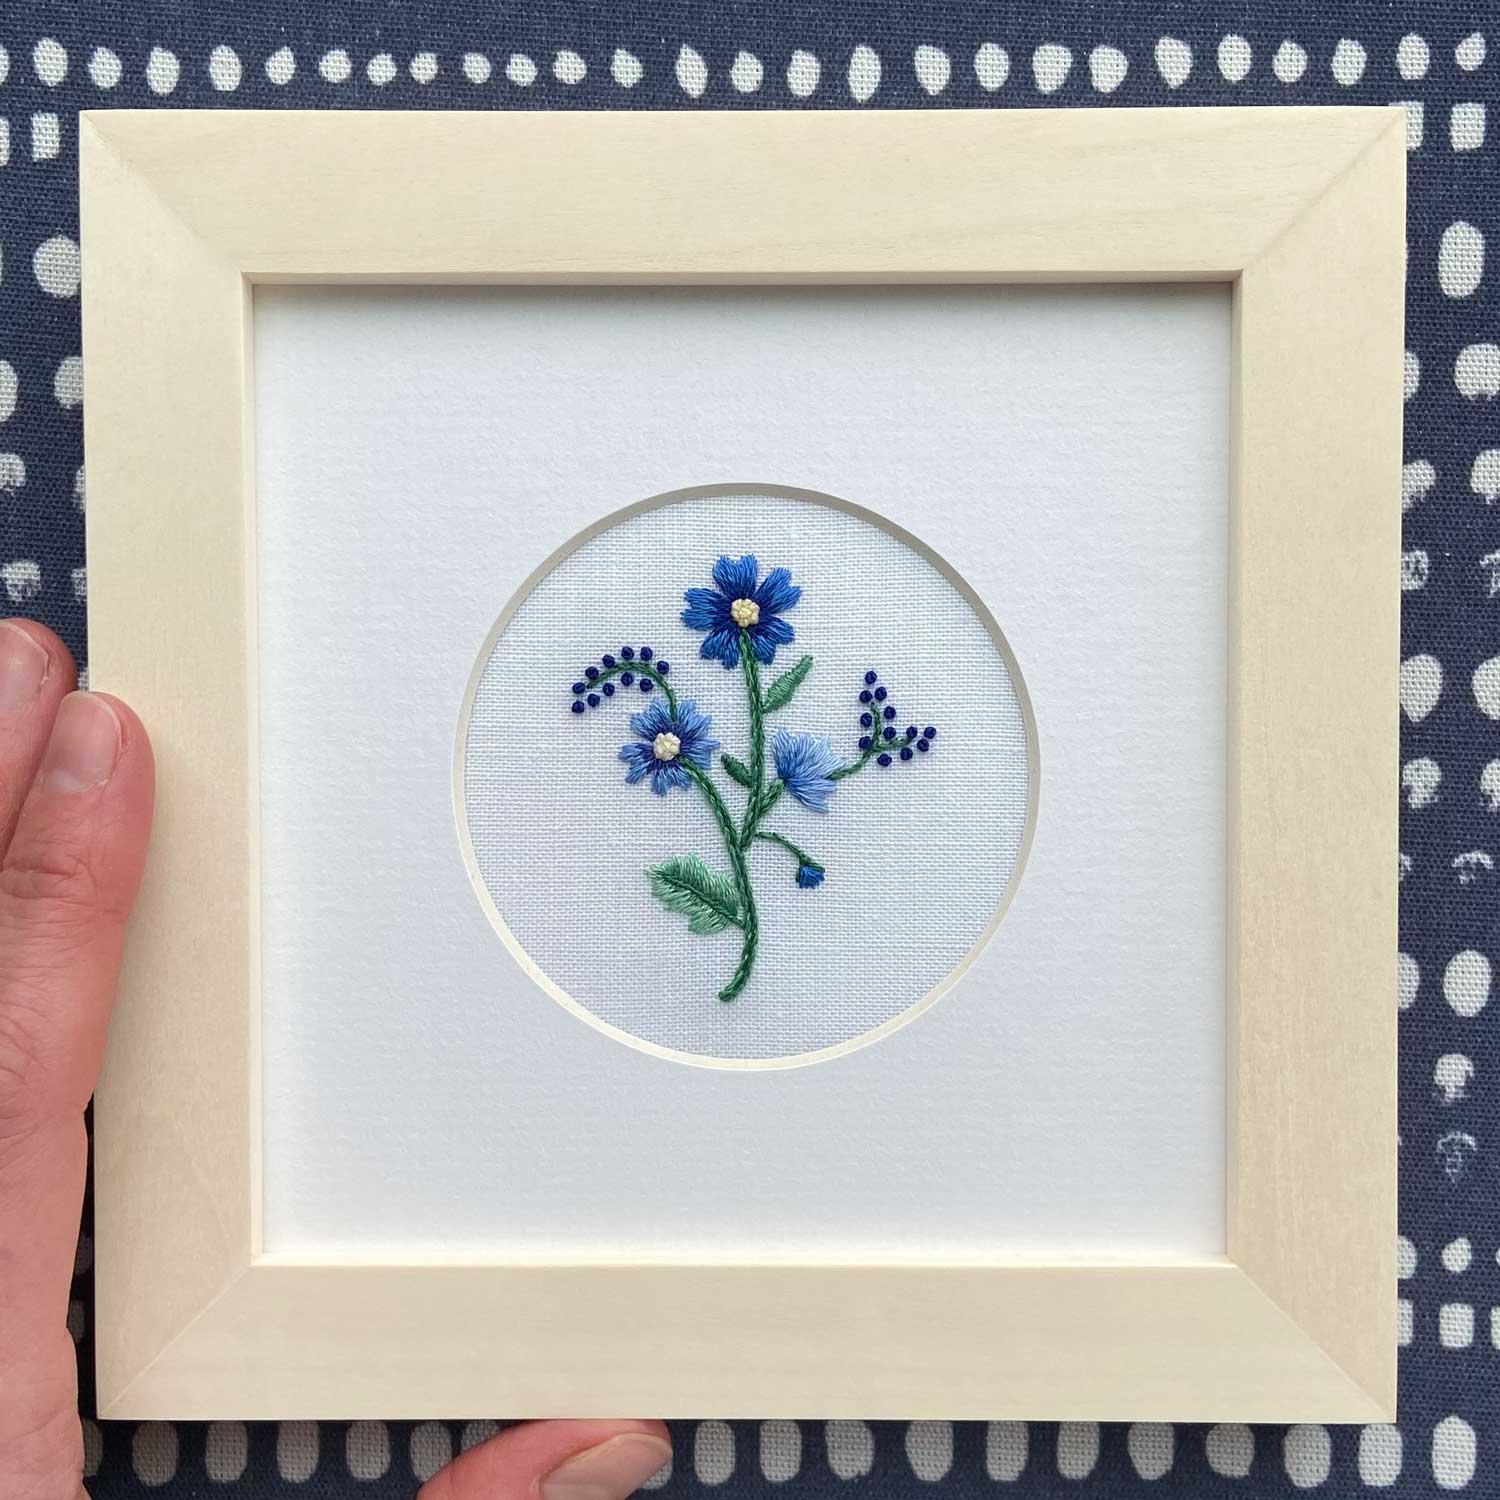 Single Flower (Blue) on White Linen Hand Embroidered Art